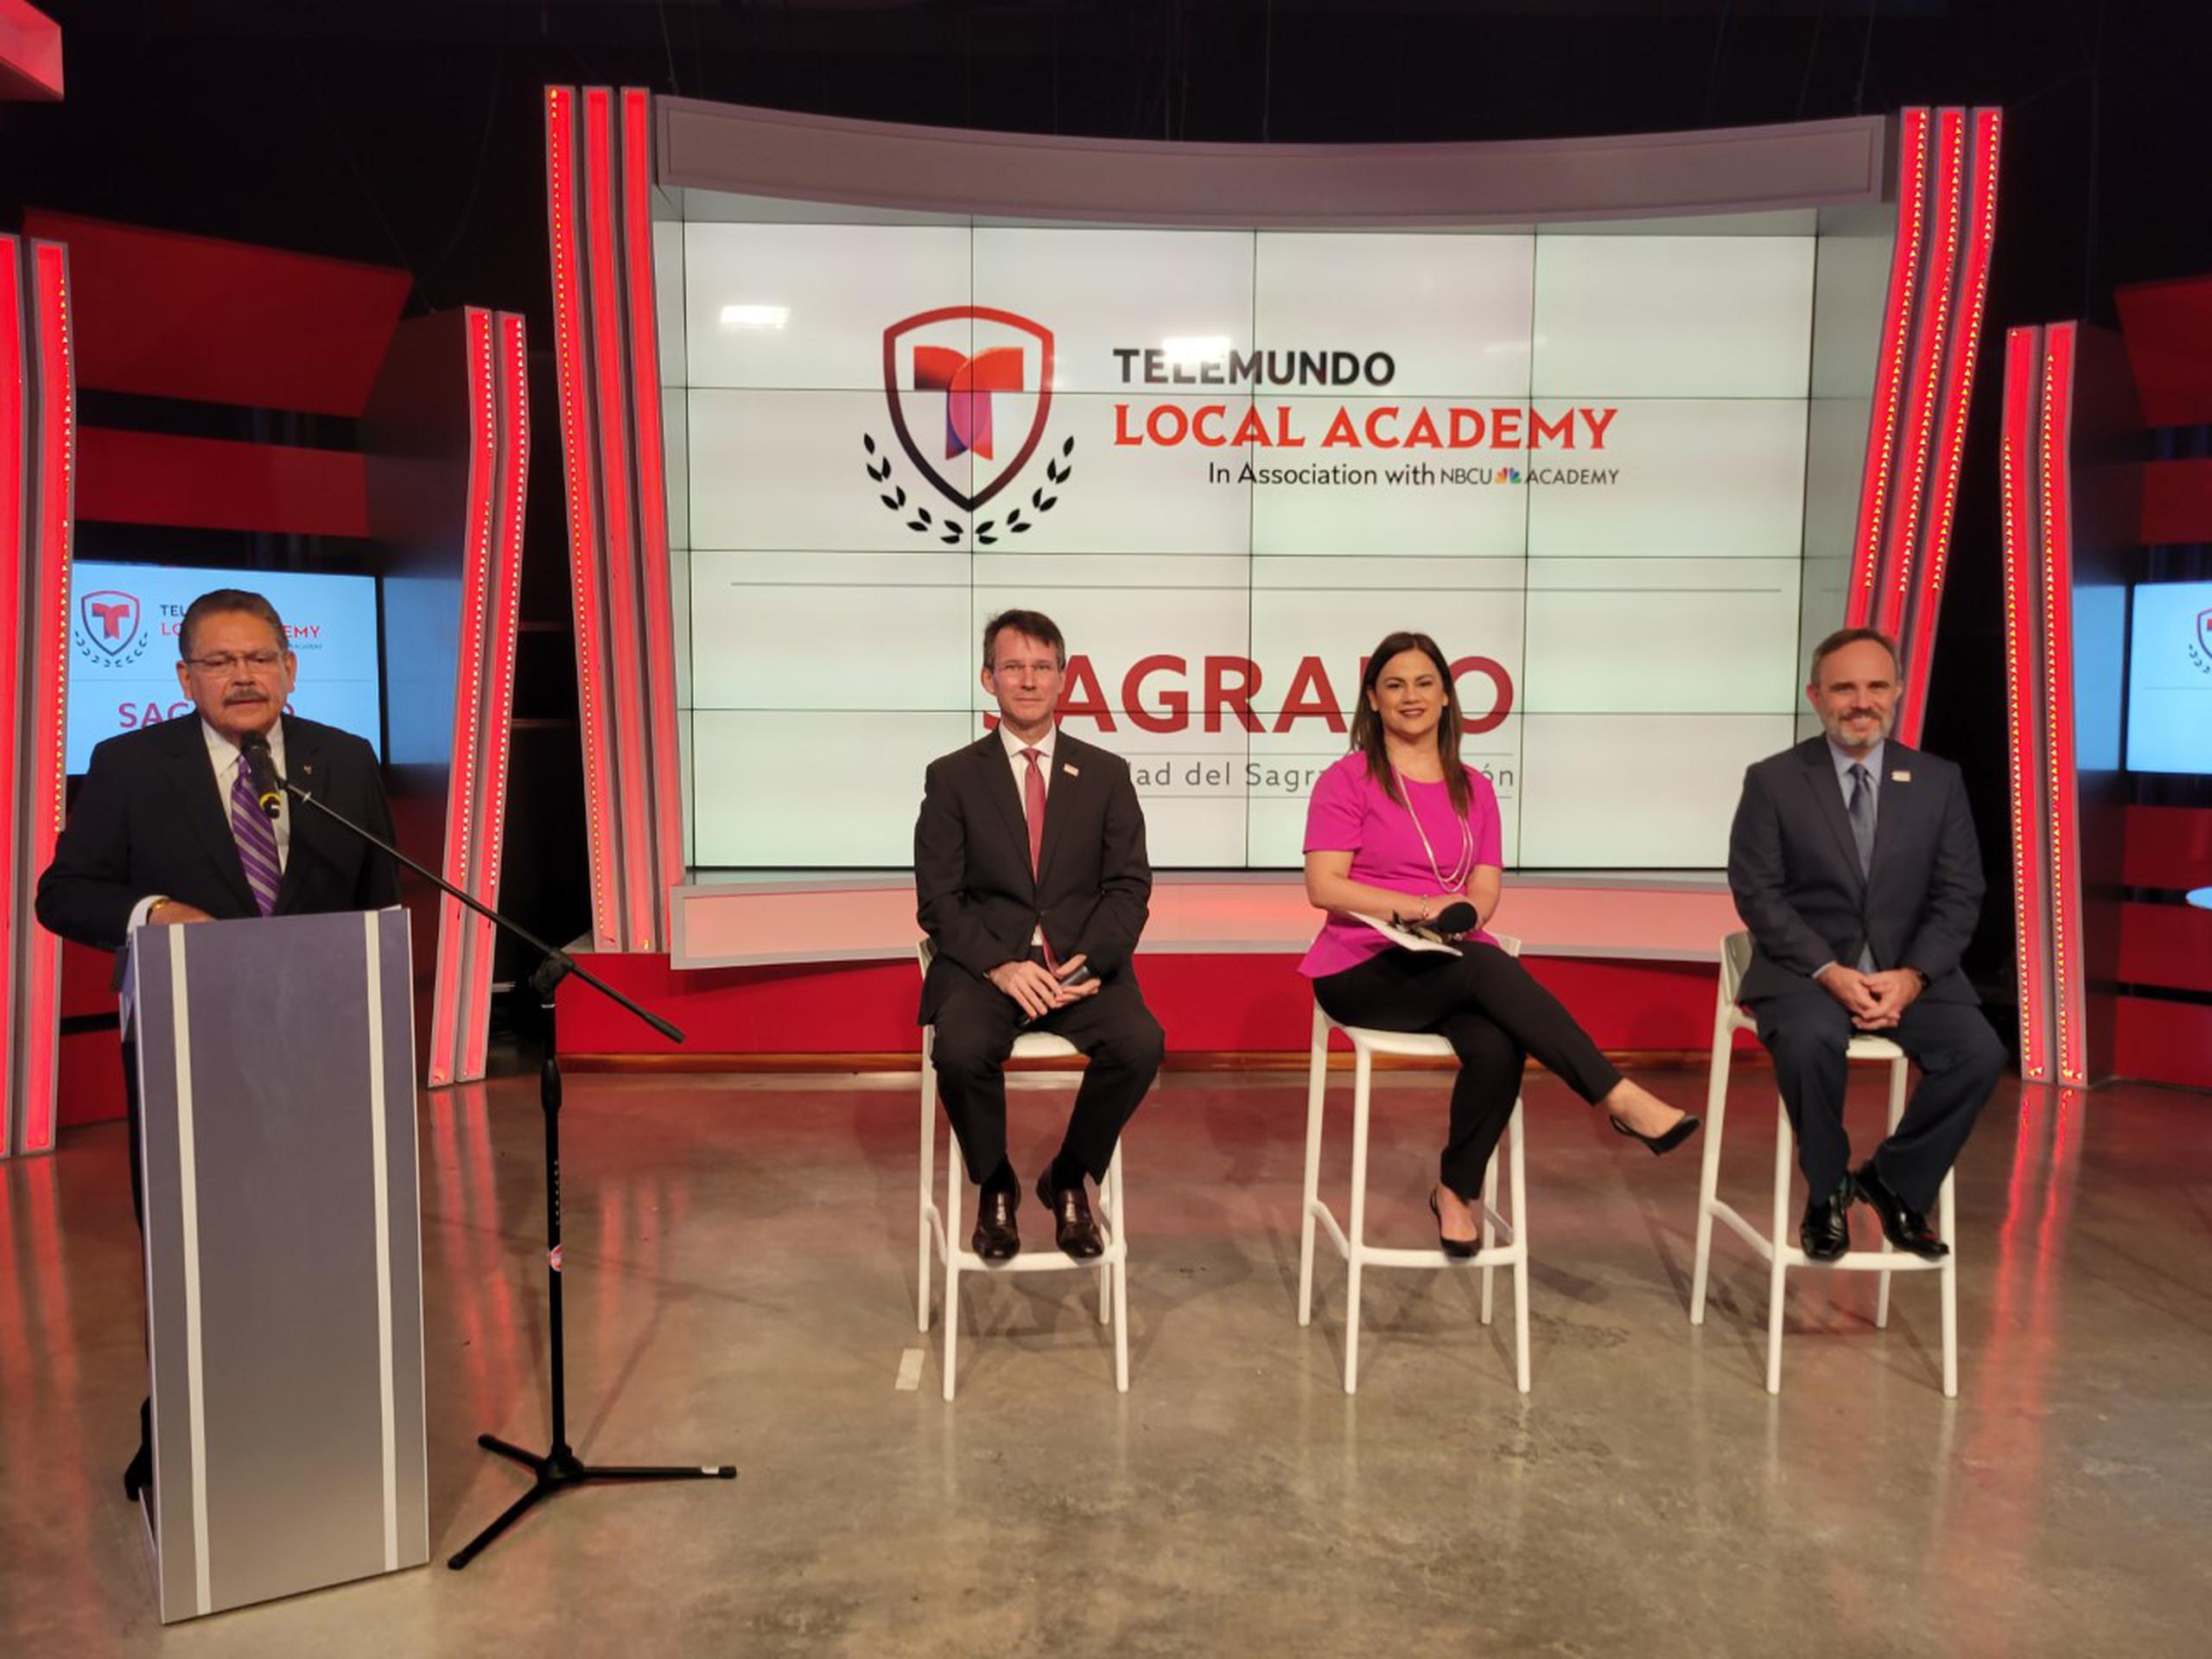 La nueva asociación entre la estación de televisión y la universidad fue anunciada hoy desde un estudio en Telemundo Puerto Rico.